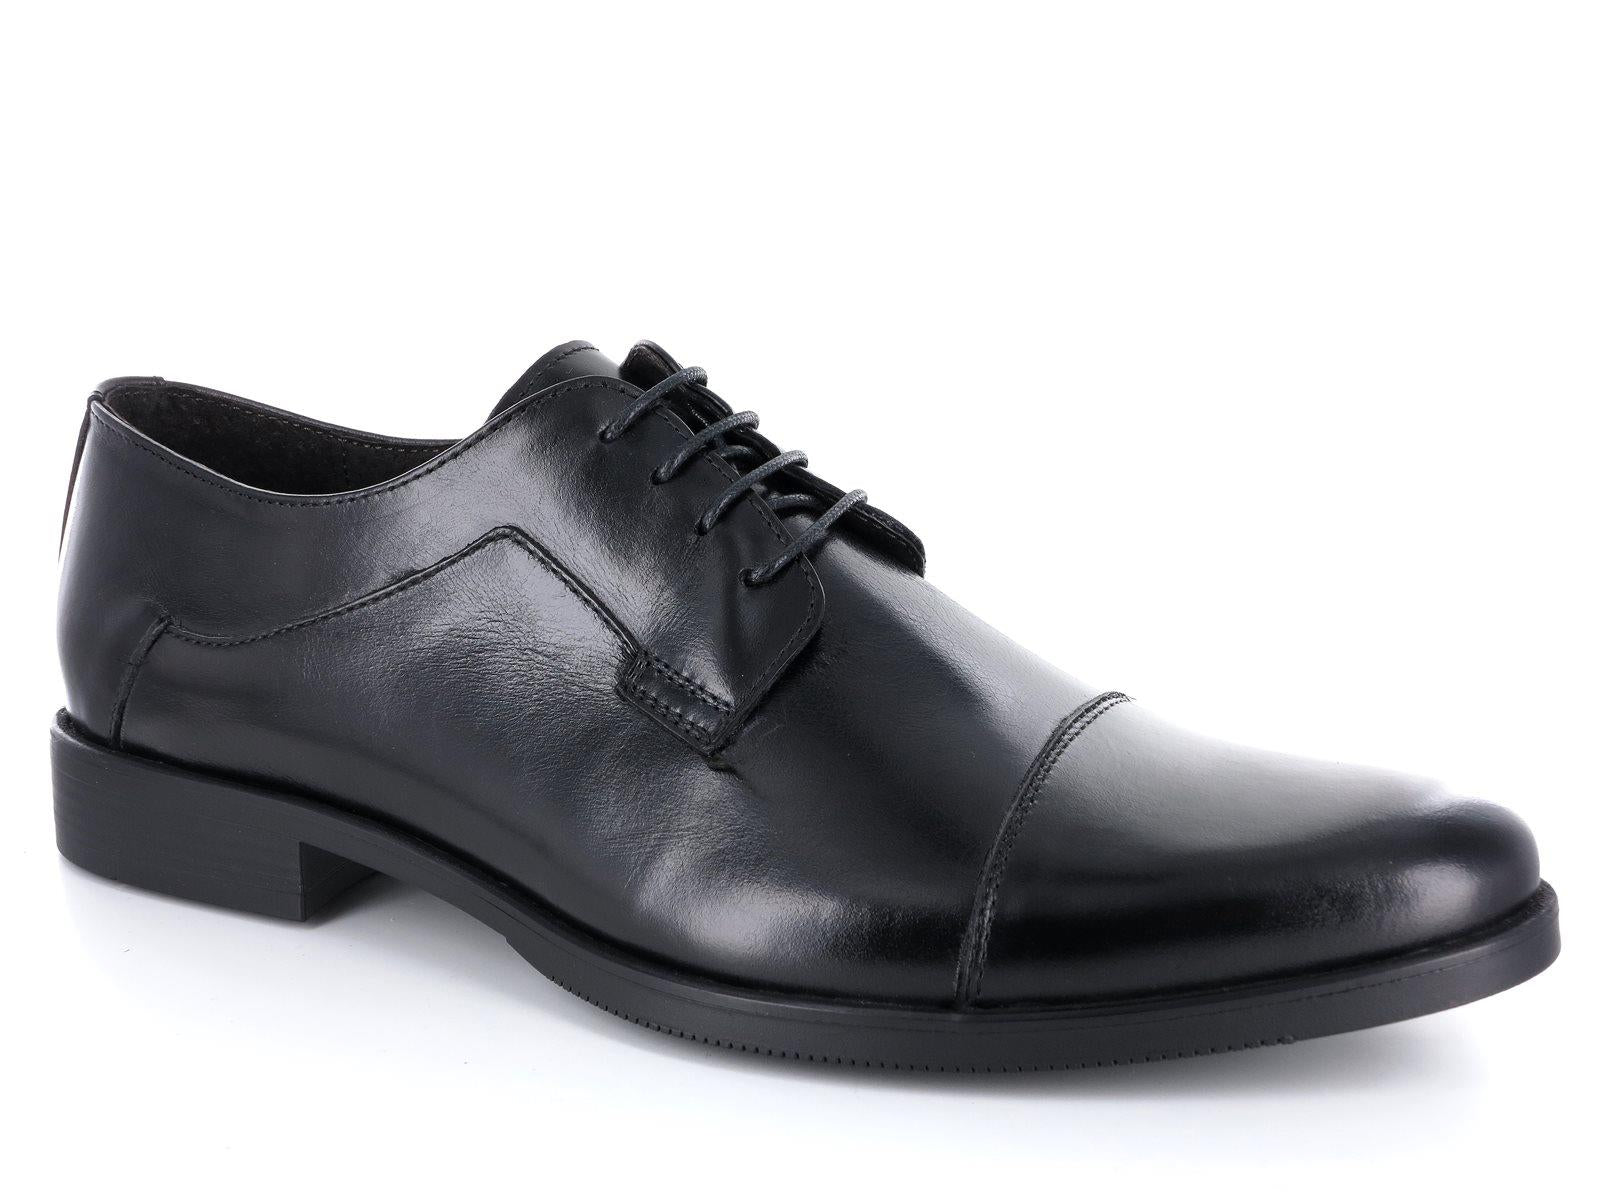 BENSON 90071 Scarpe classiche artigianali eleganti in vera pelle nel colore nero adatte per divisa uniforme da uomo